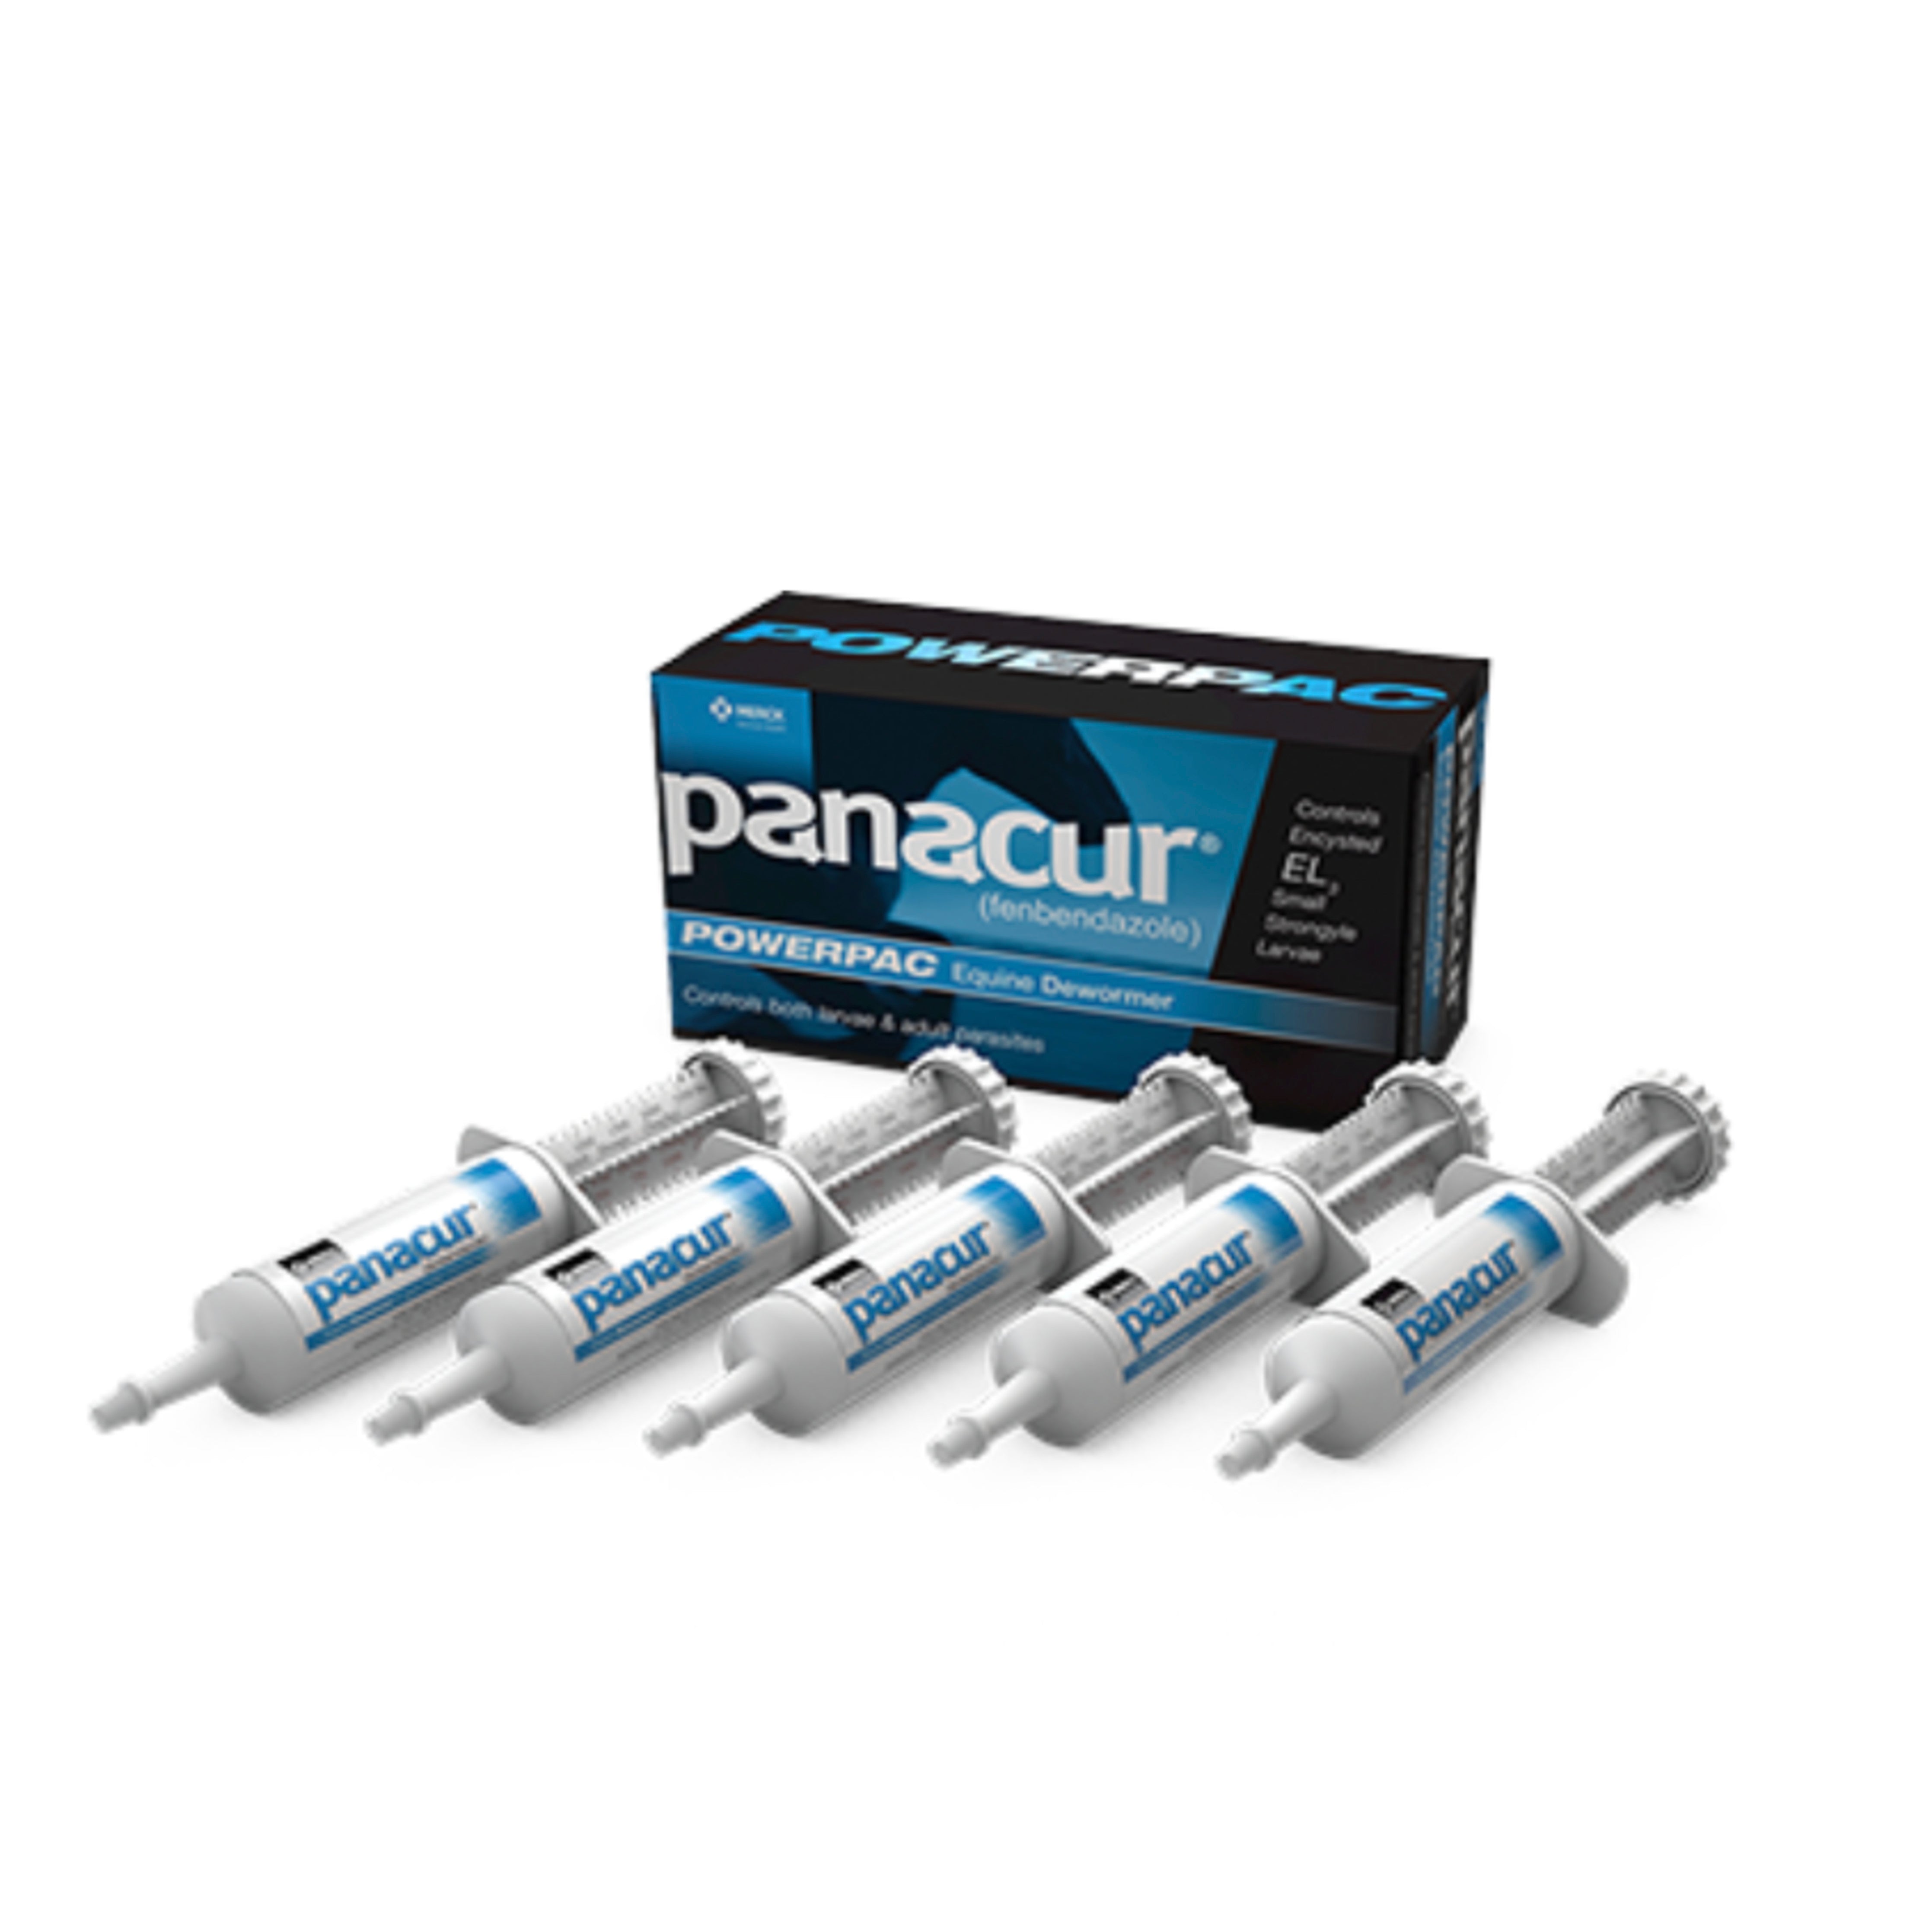 Panacur Power Pac Dewormer